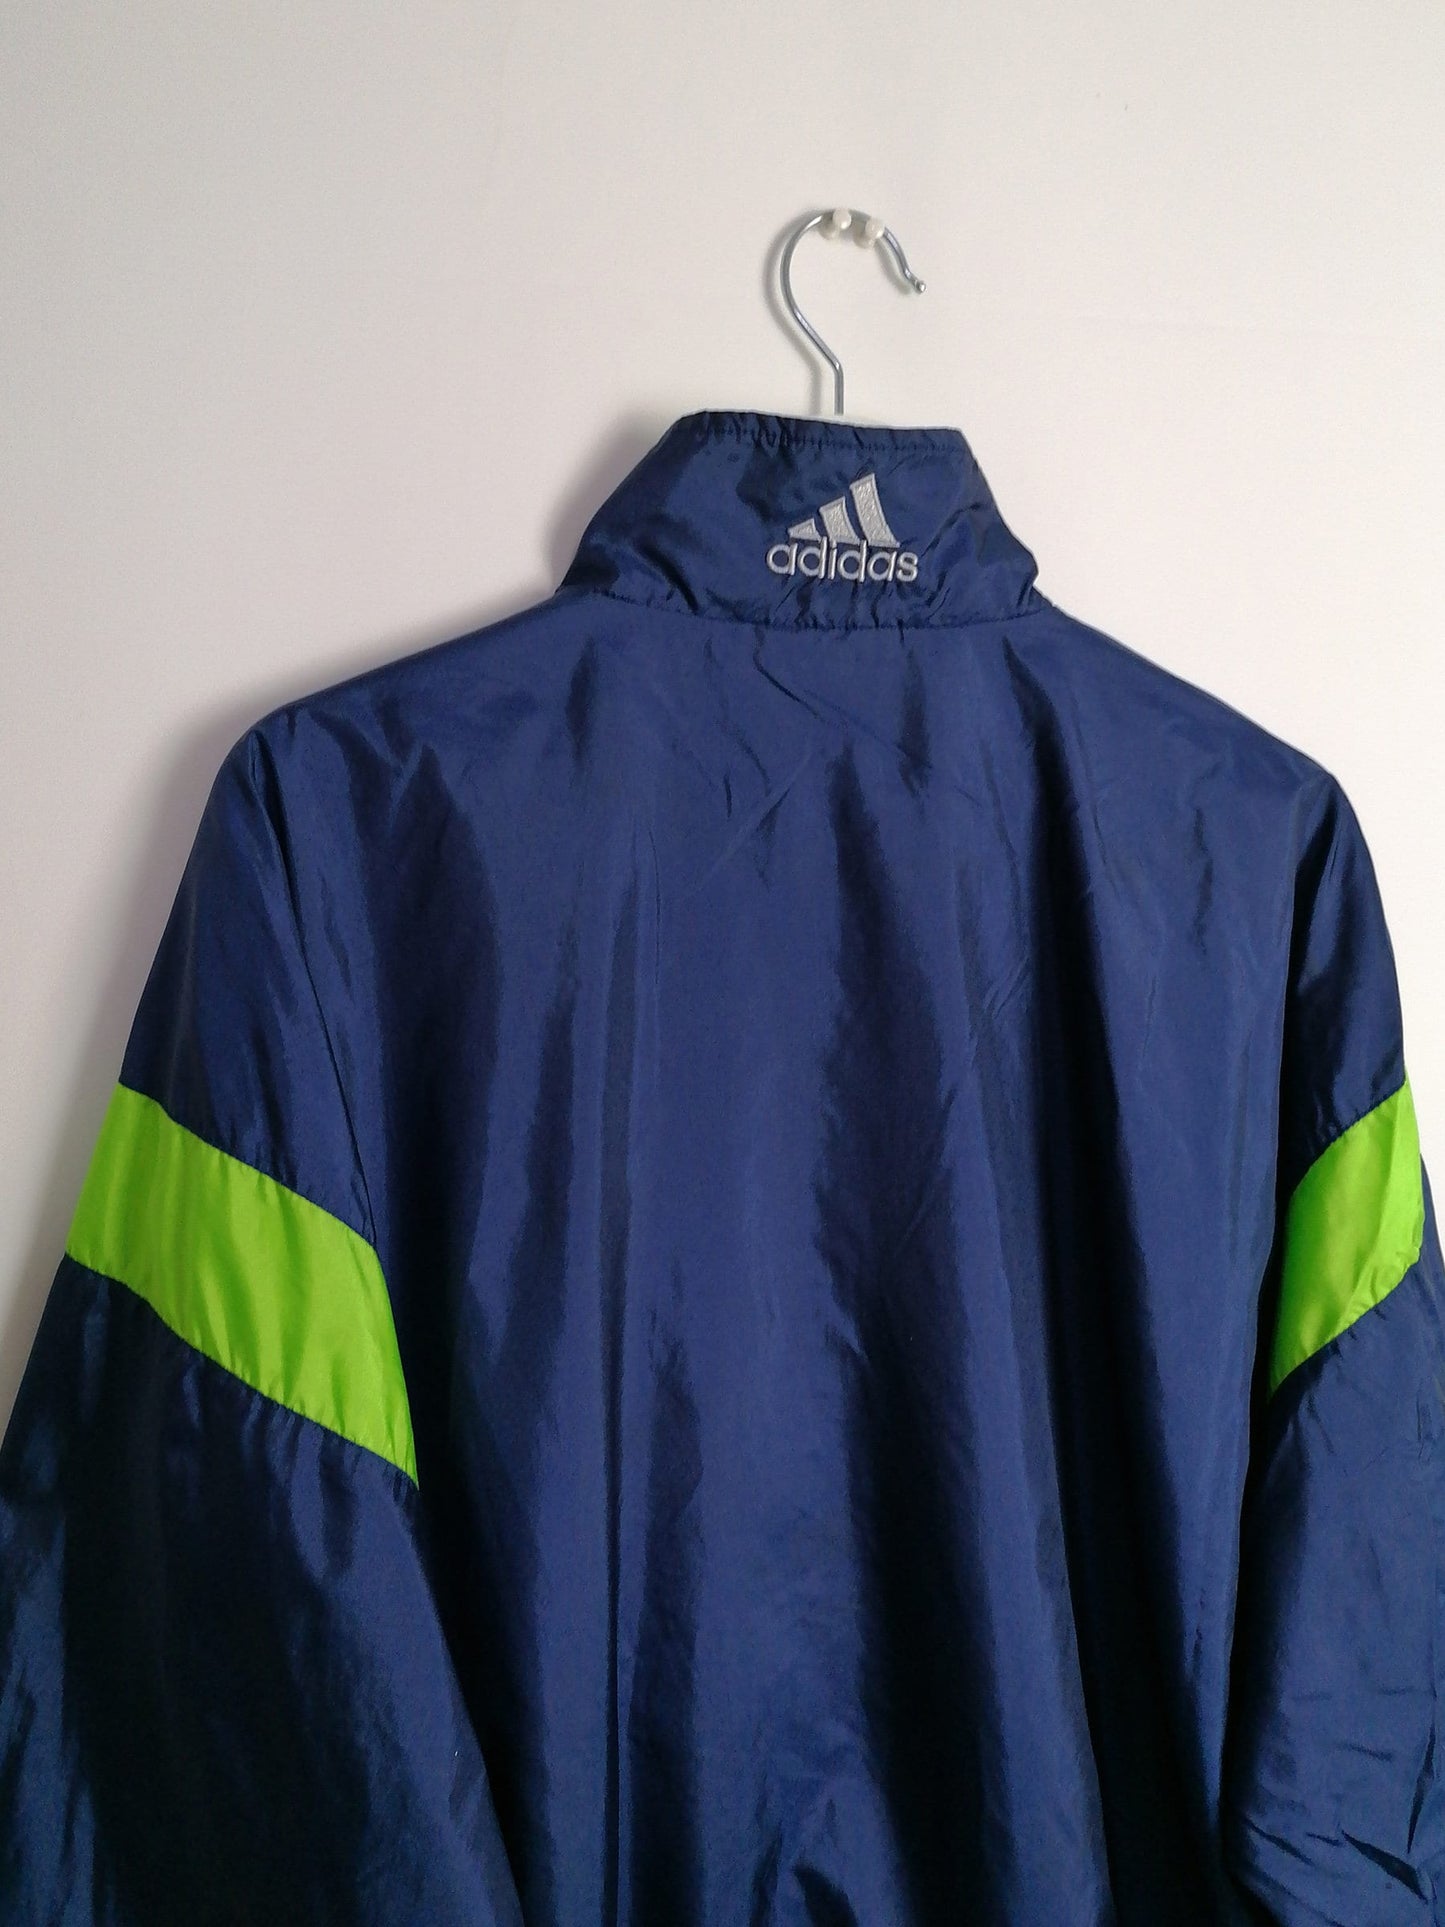 90's Adidas Unisex Shell Track Jacket ~ size L men